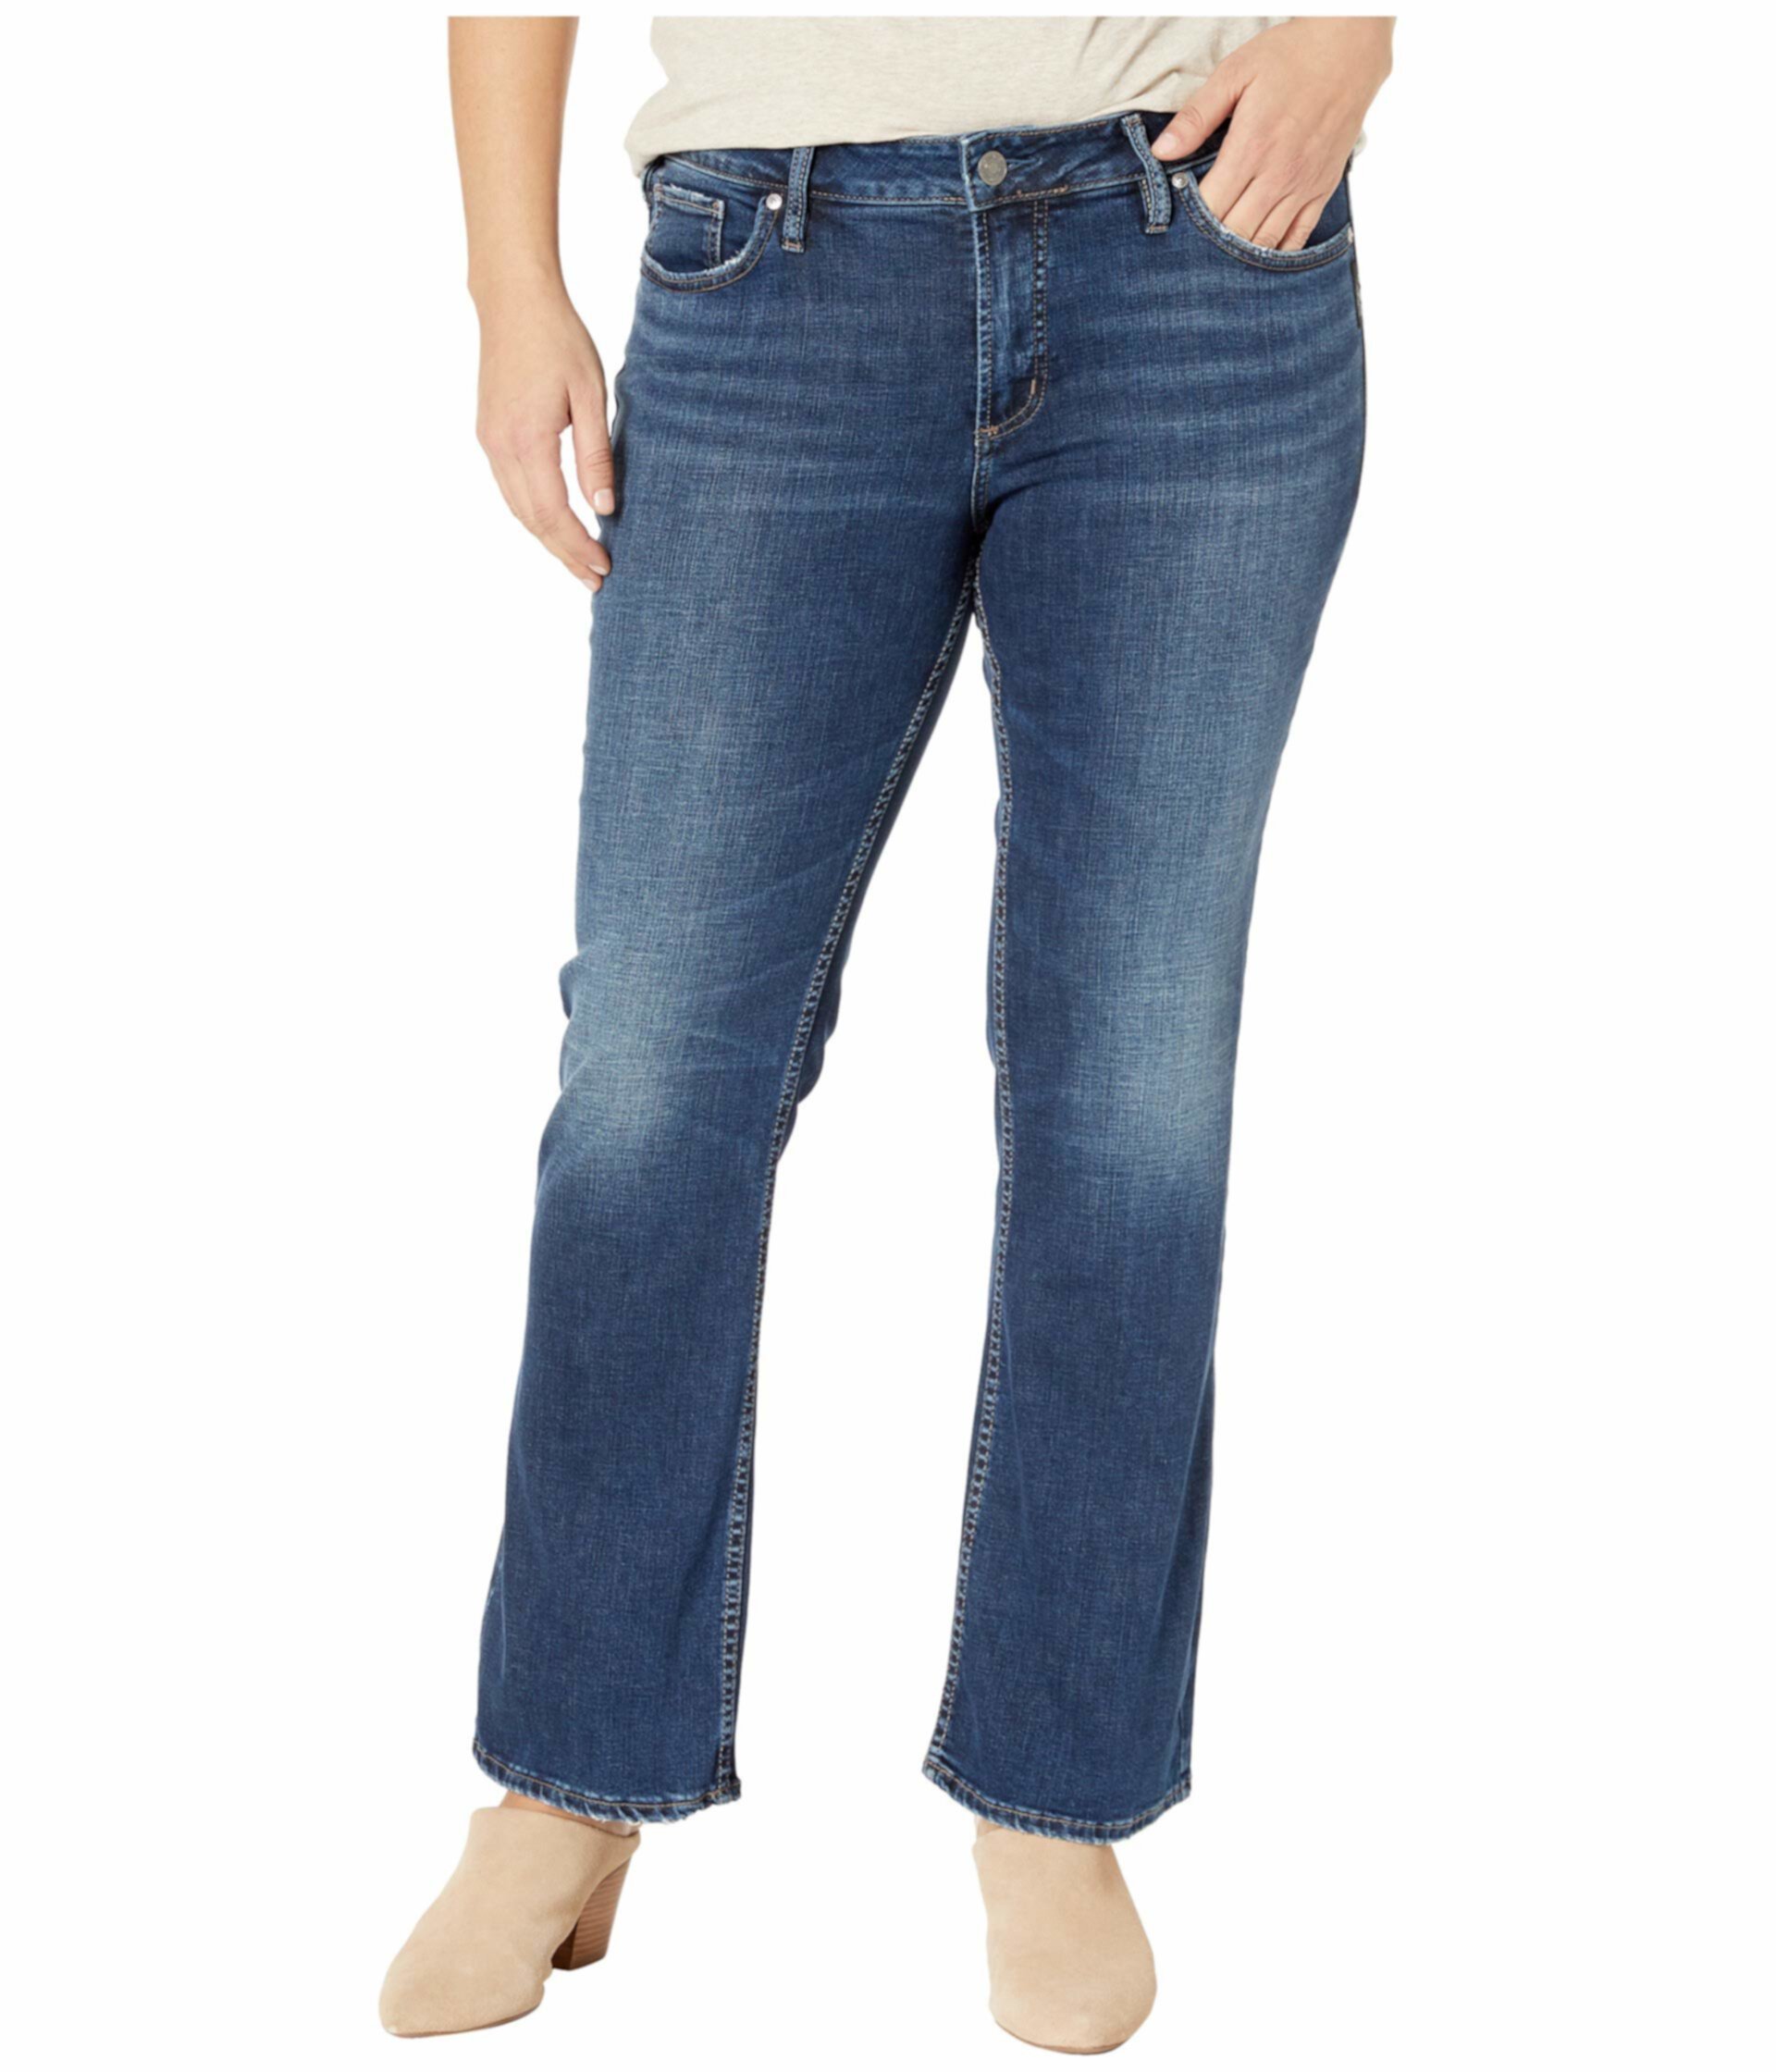 Узкие зауженные джинсы средней длины с широкими пуховиками Suki большого размера в цвете Индиго W93616SDK424 Silver Jeans Co.